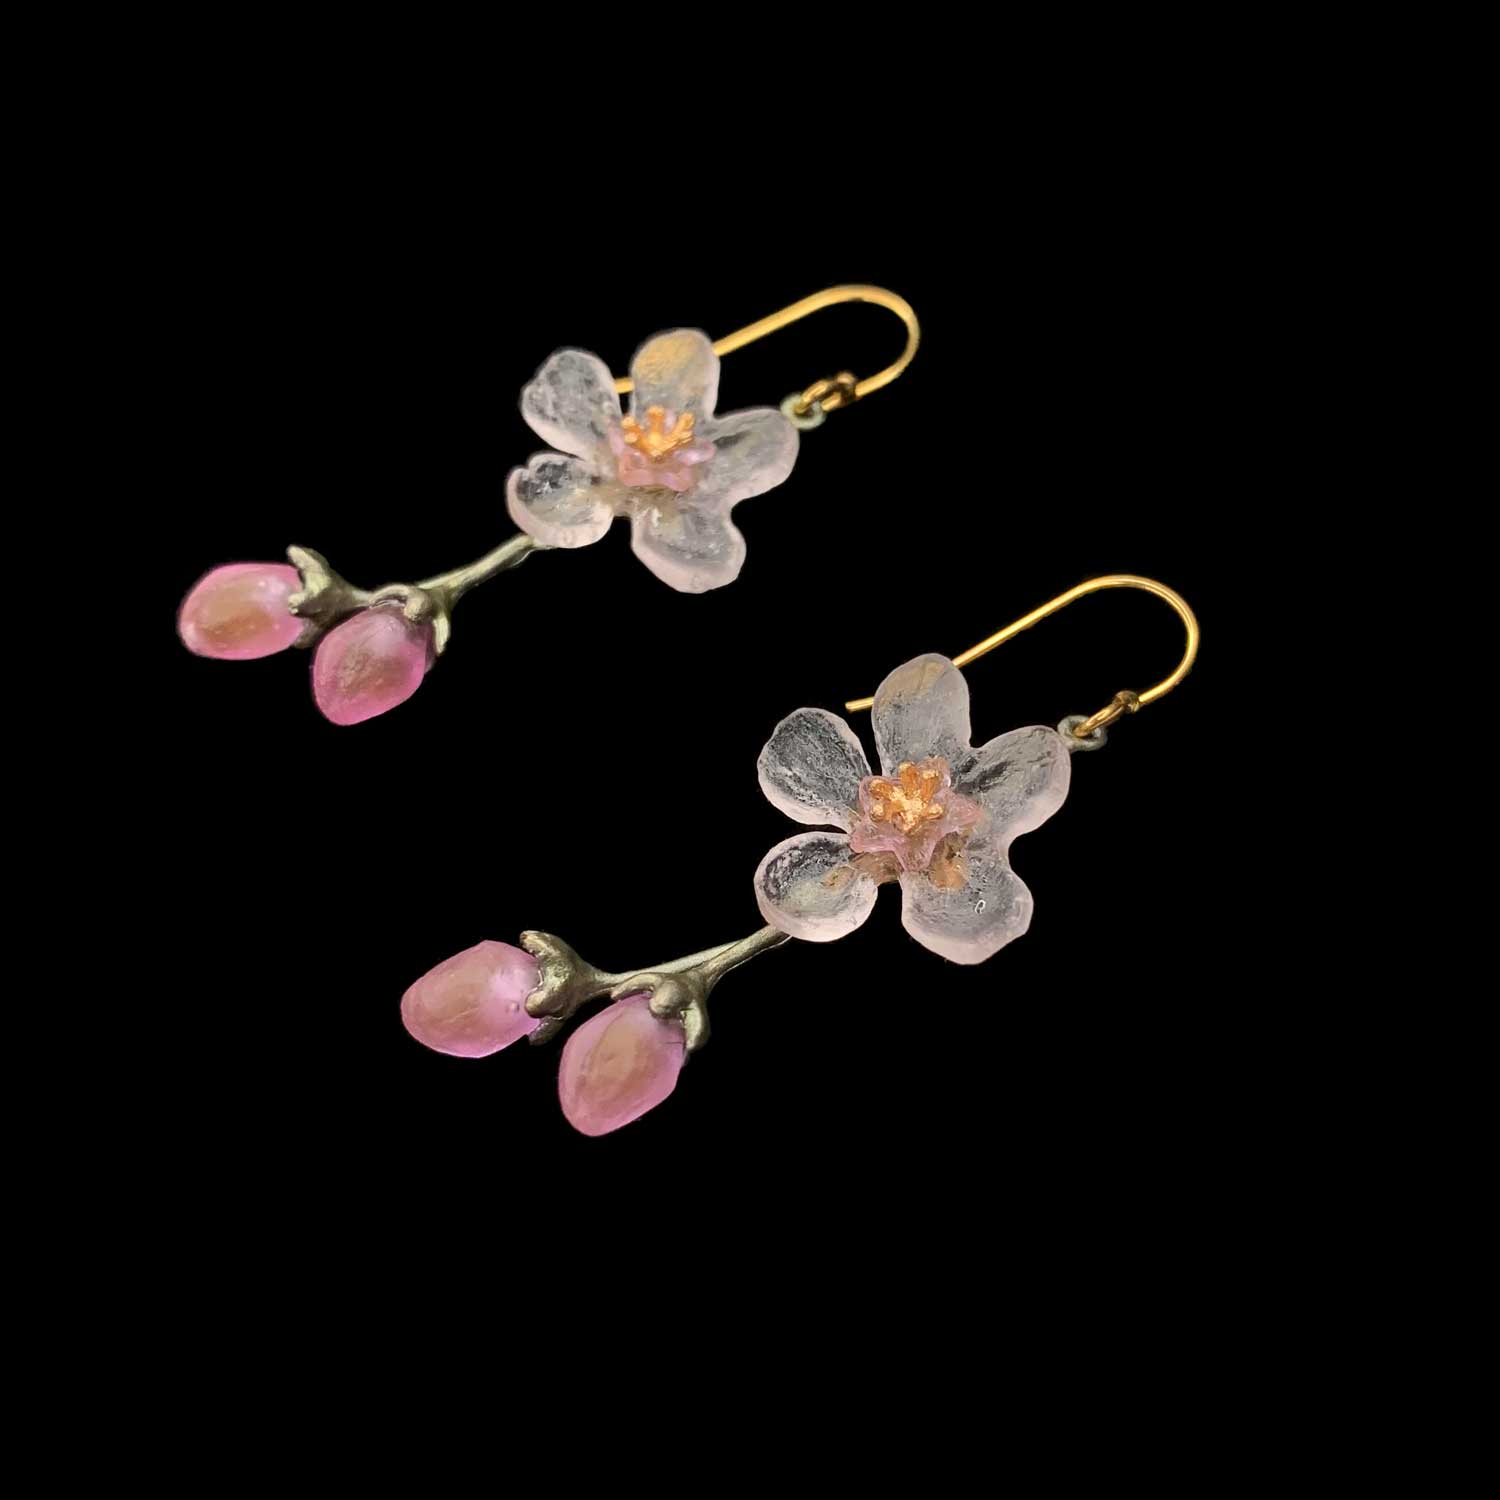 Blossom Long Earrings